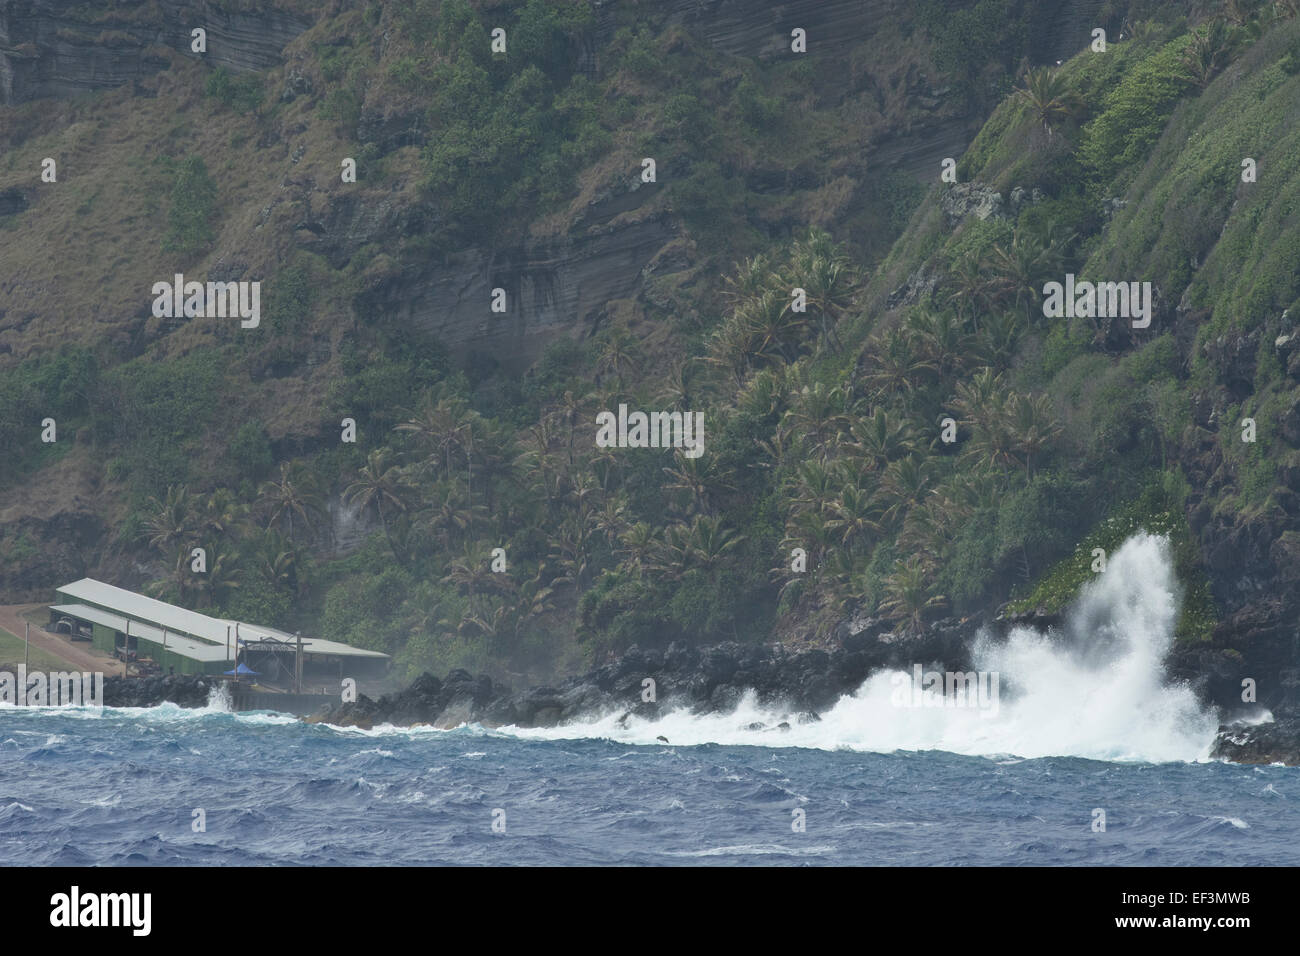 Pitcairn-Inseln, Pitcairn. Küsten Blick auf schroffen vulkanischen Küste. Brechenden Wellen rund um das Bootshaus (L) und Landeplatz. Stockfoto